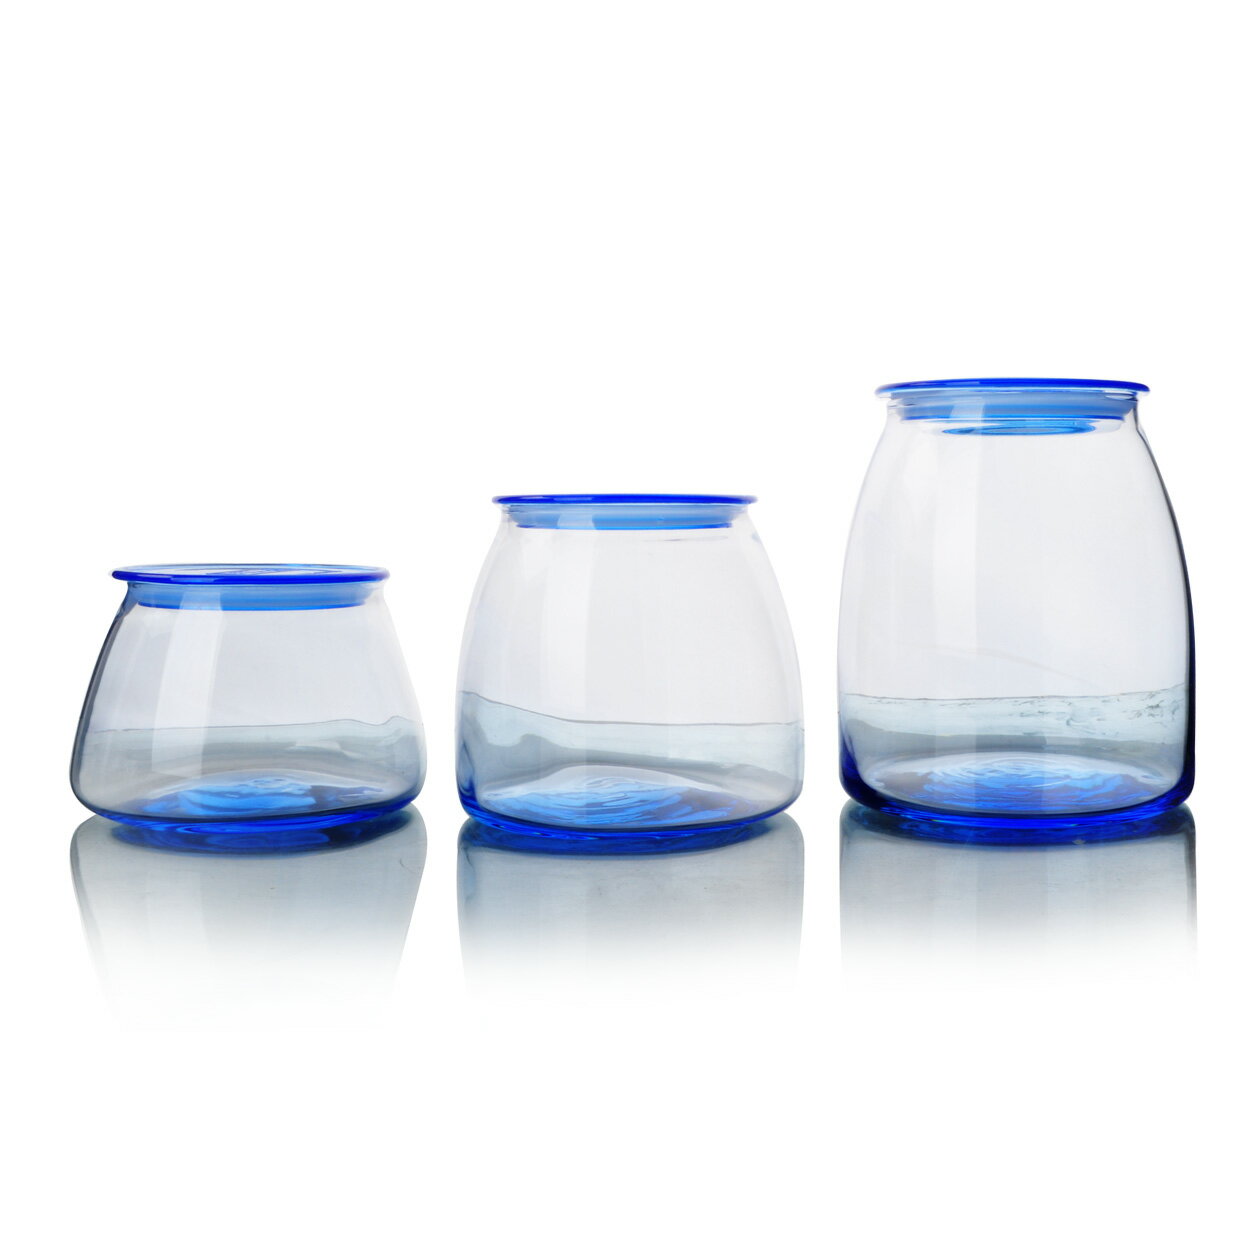 錐形玻璃密封罐雜糧防潮儲物罐密封瓶茶葉罐奶粉罐玻璃瓶玻璃罐